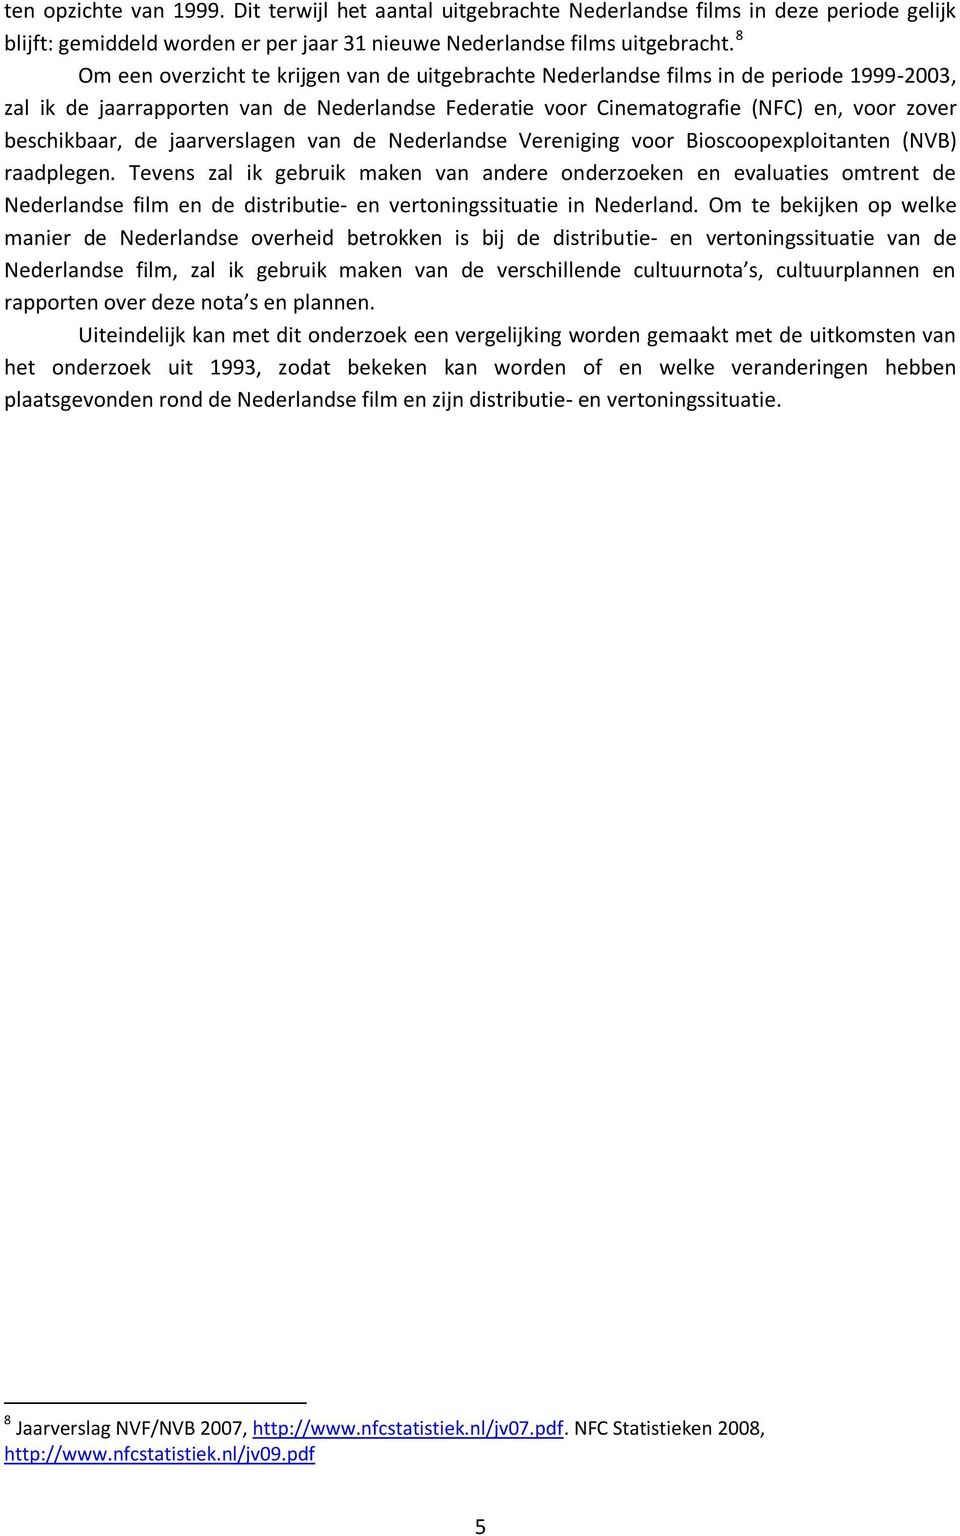 de jaarverslagen van de Nederlandse Vereniging voor Bioscoopexploitanten (NVB) raadplegen.